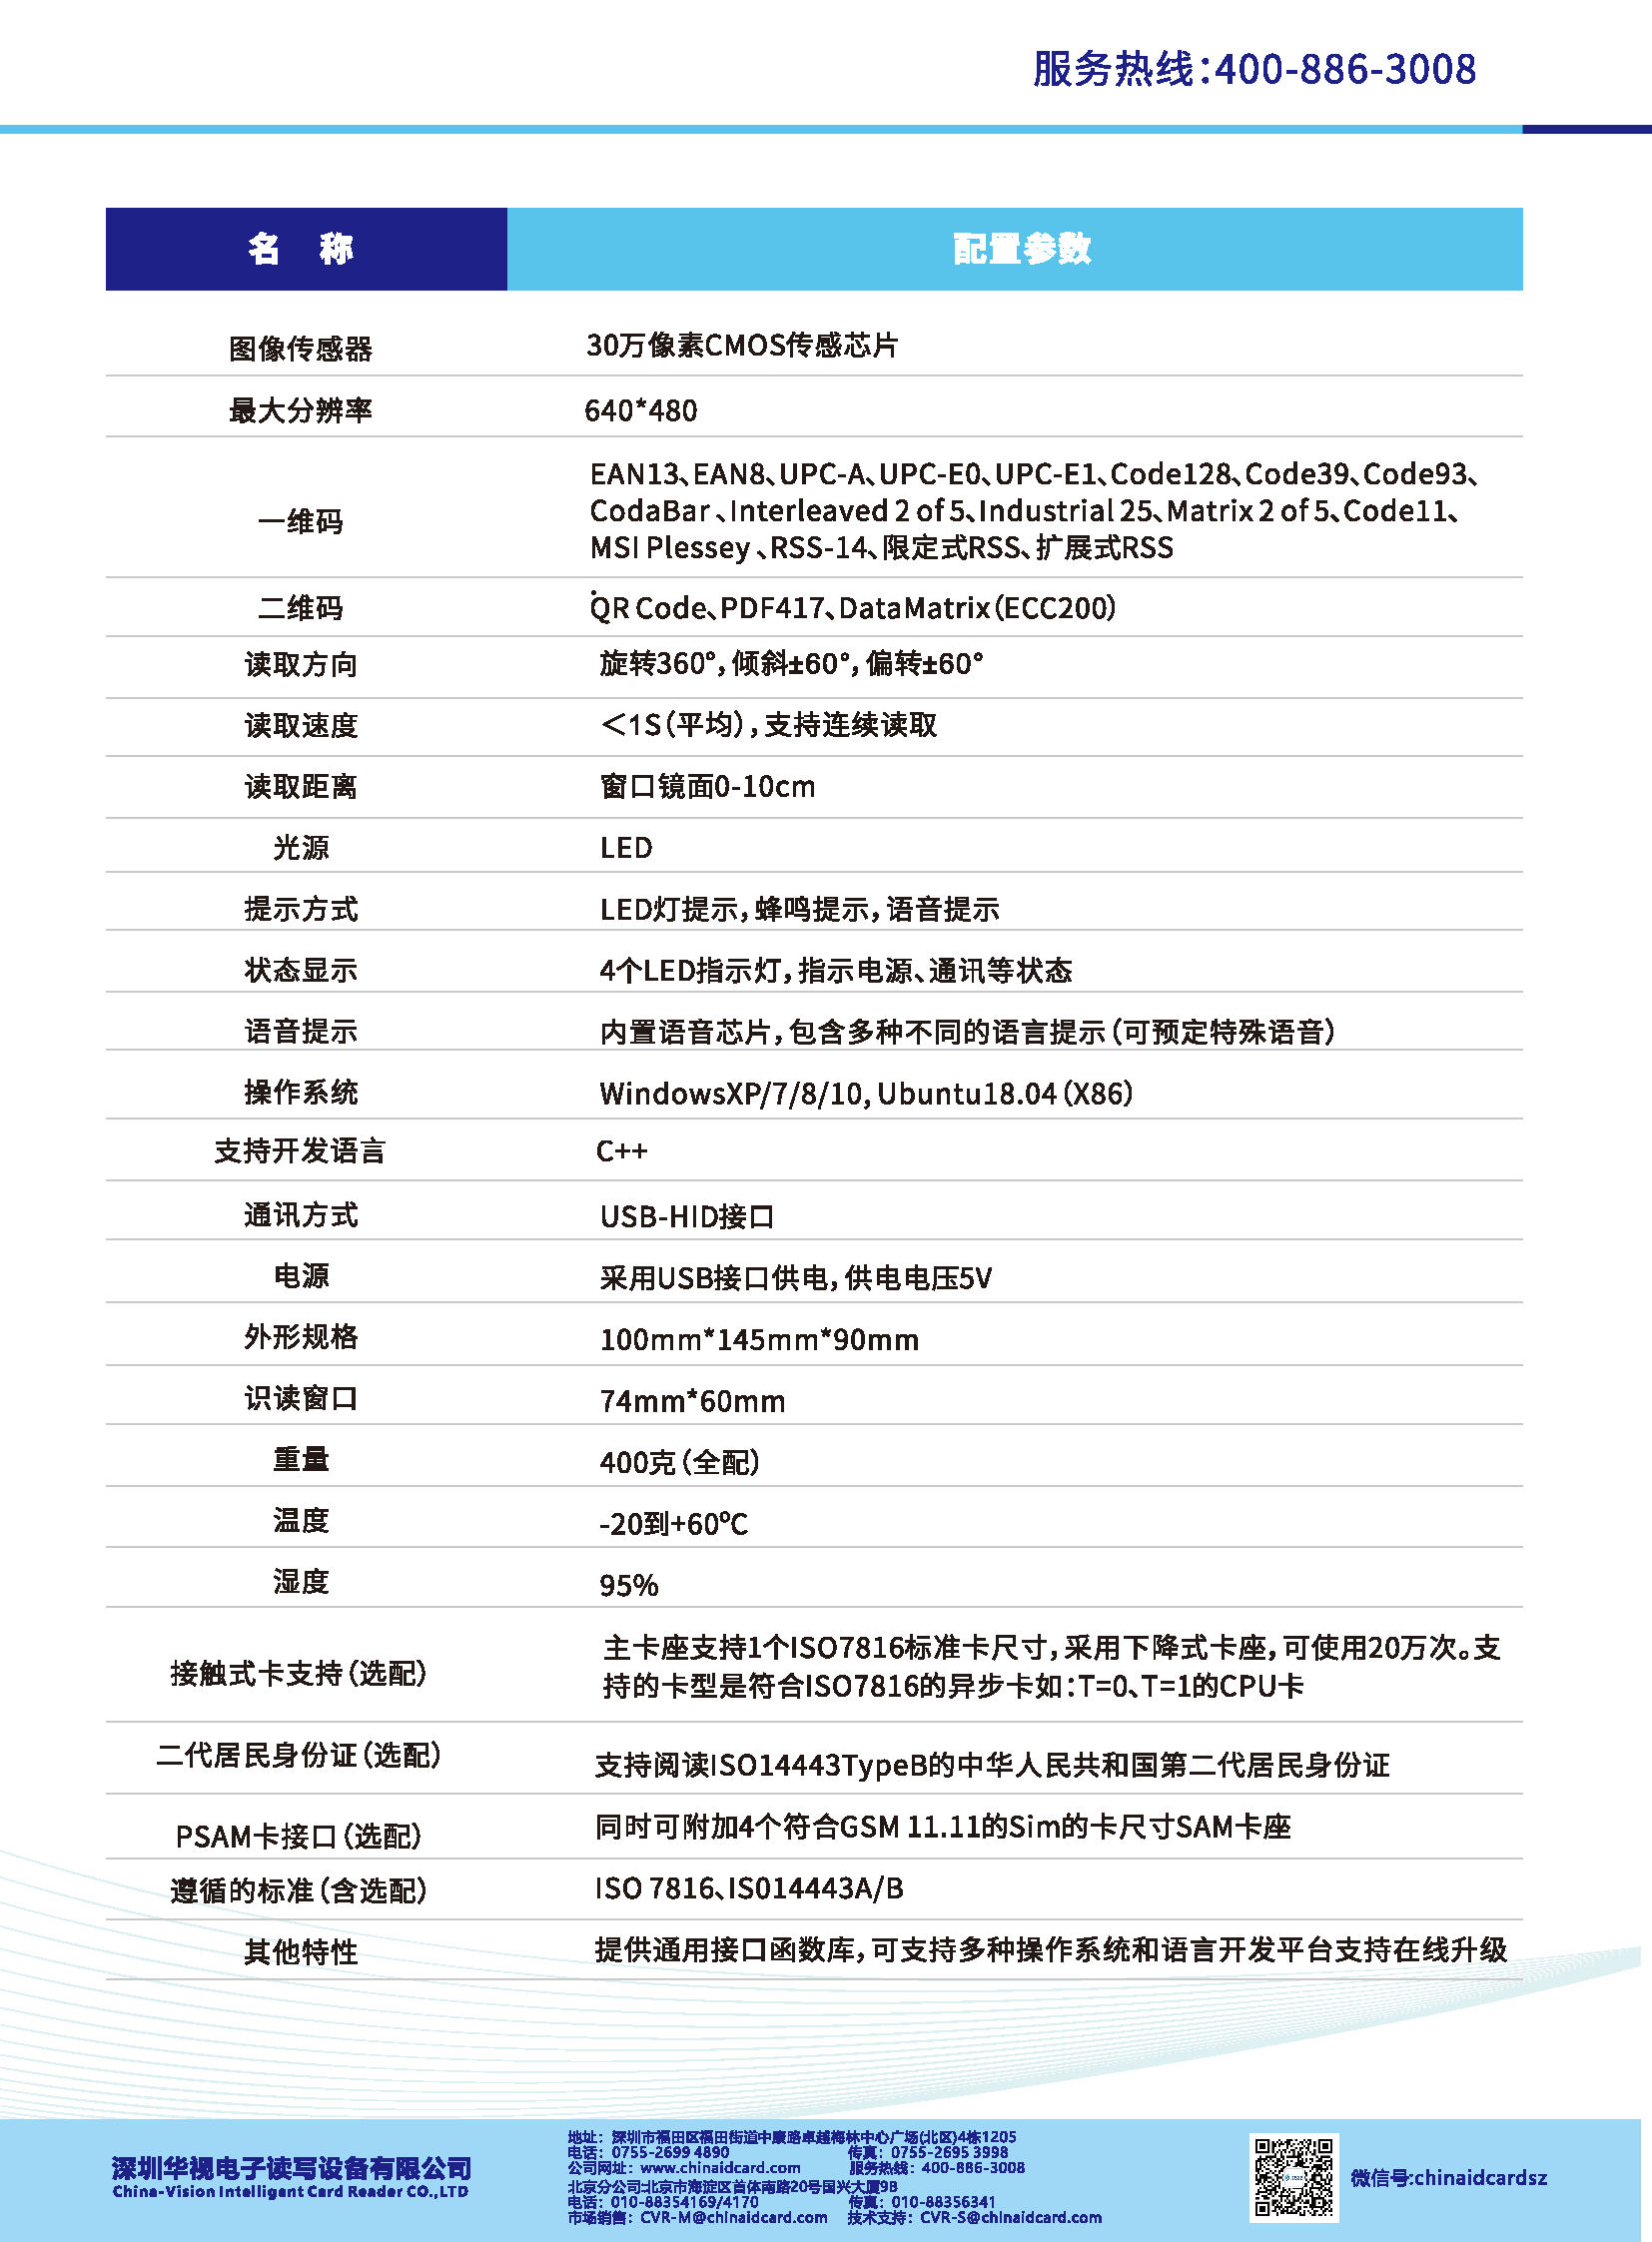 华视电子CVR-100US台式身份证阅读机具_页面_2.png